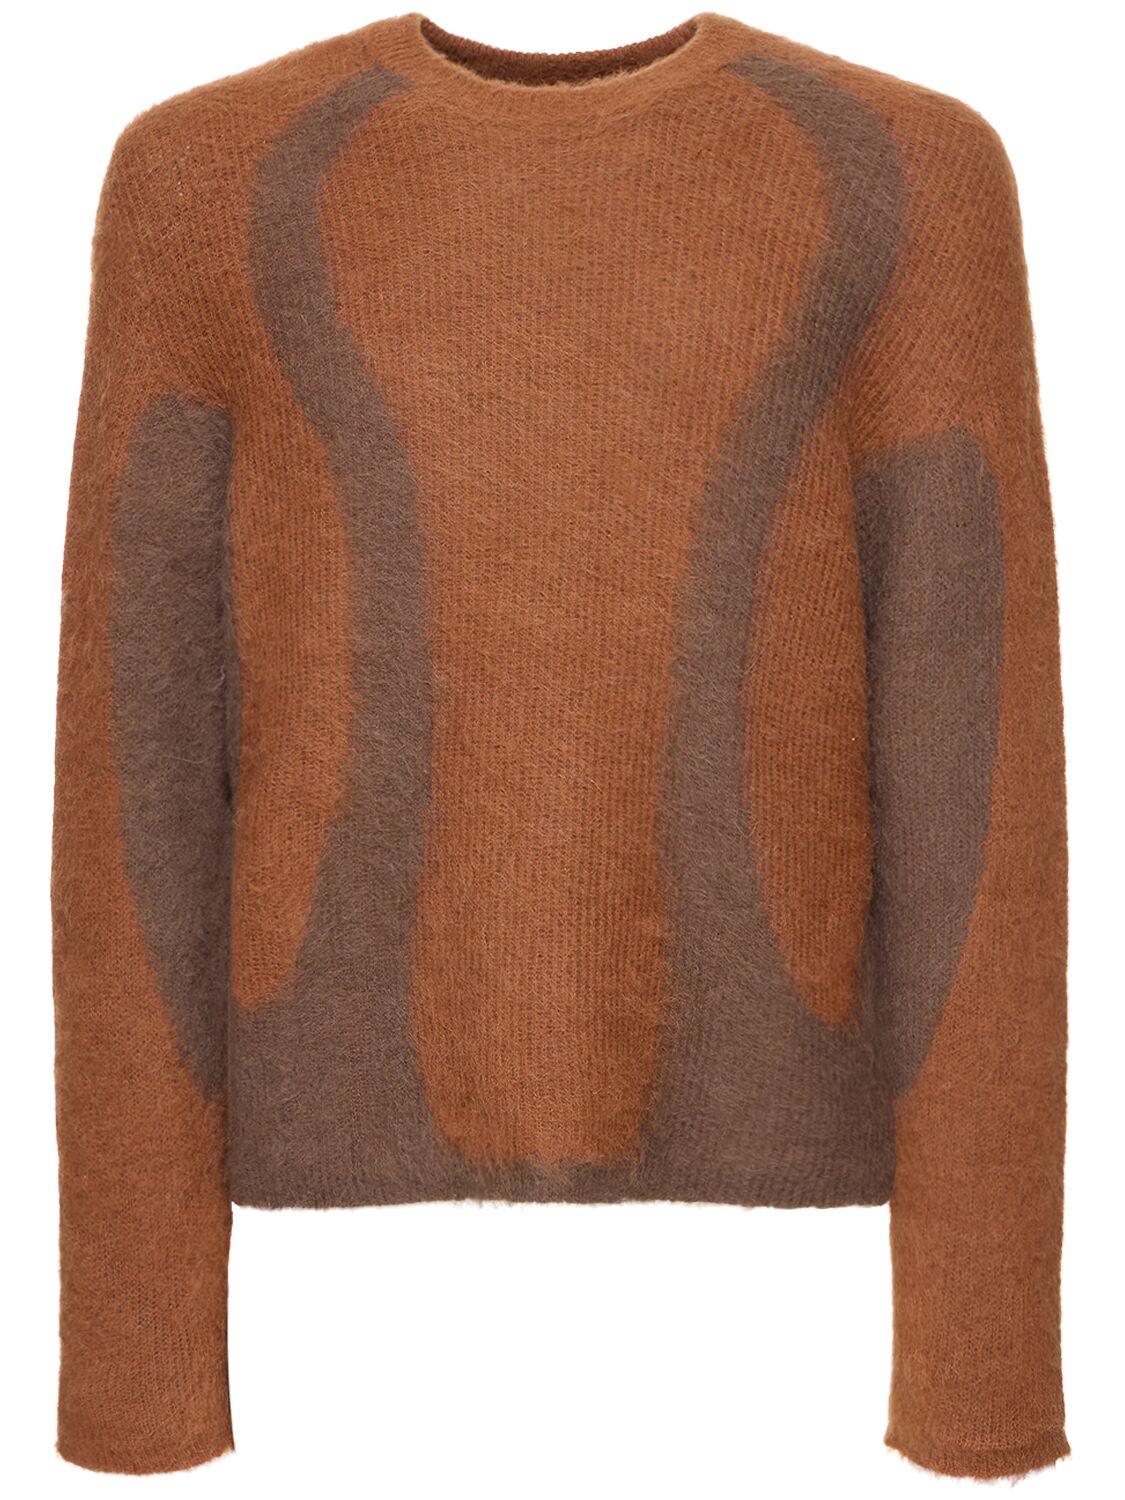 Image of Liquid Alpaca Blend Sweater